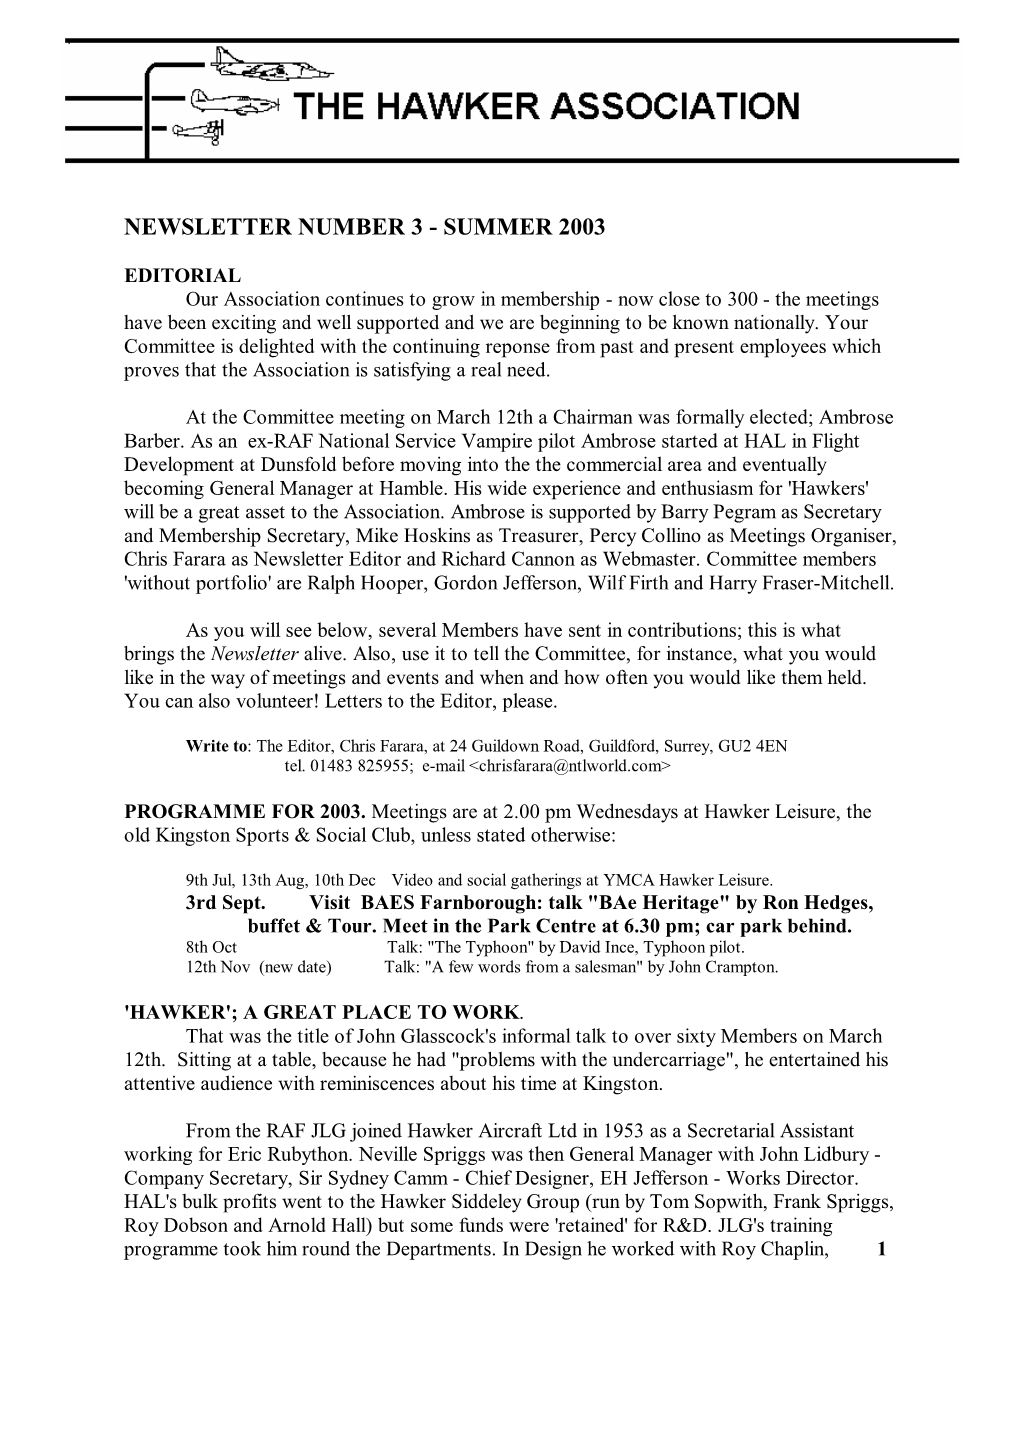 Newsletter Number 3 - Summer 2003